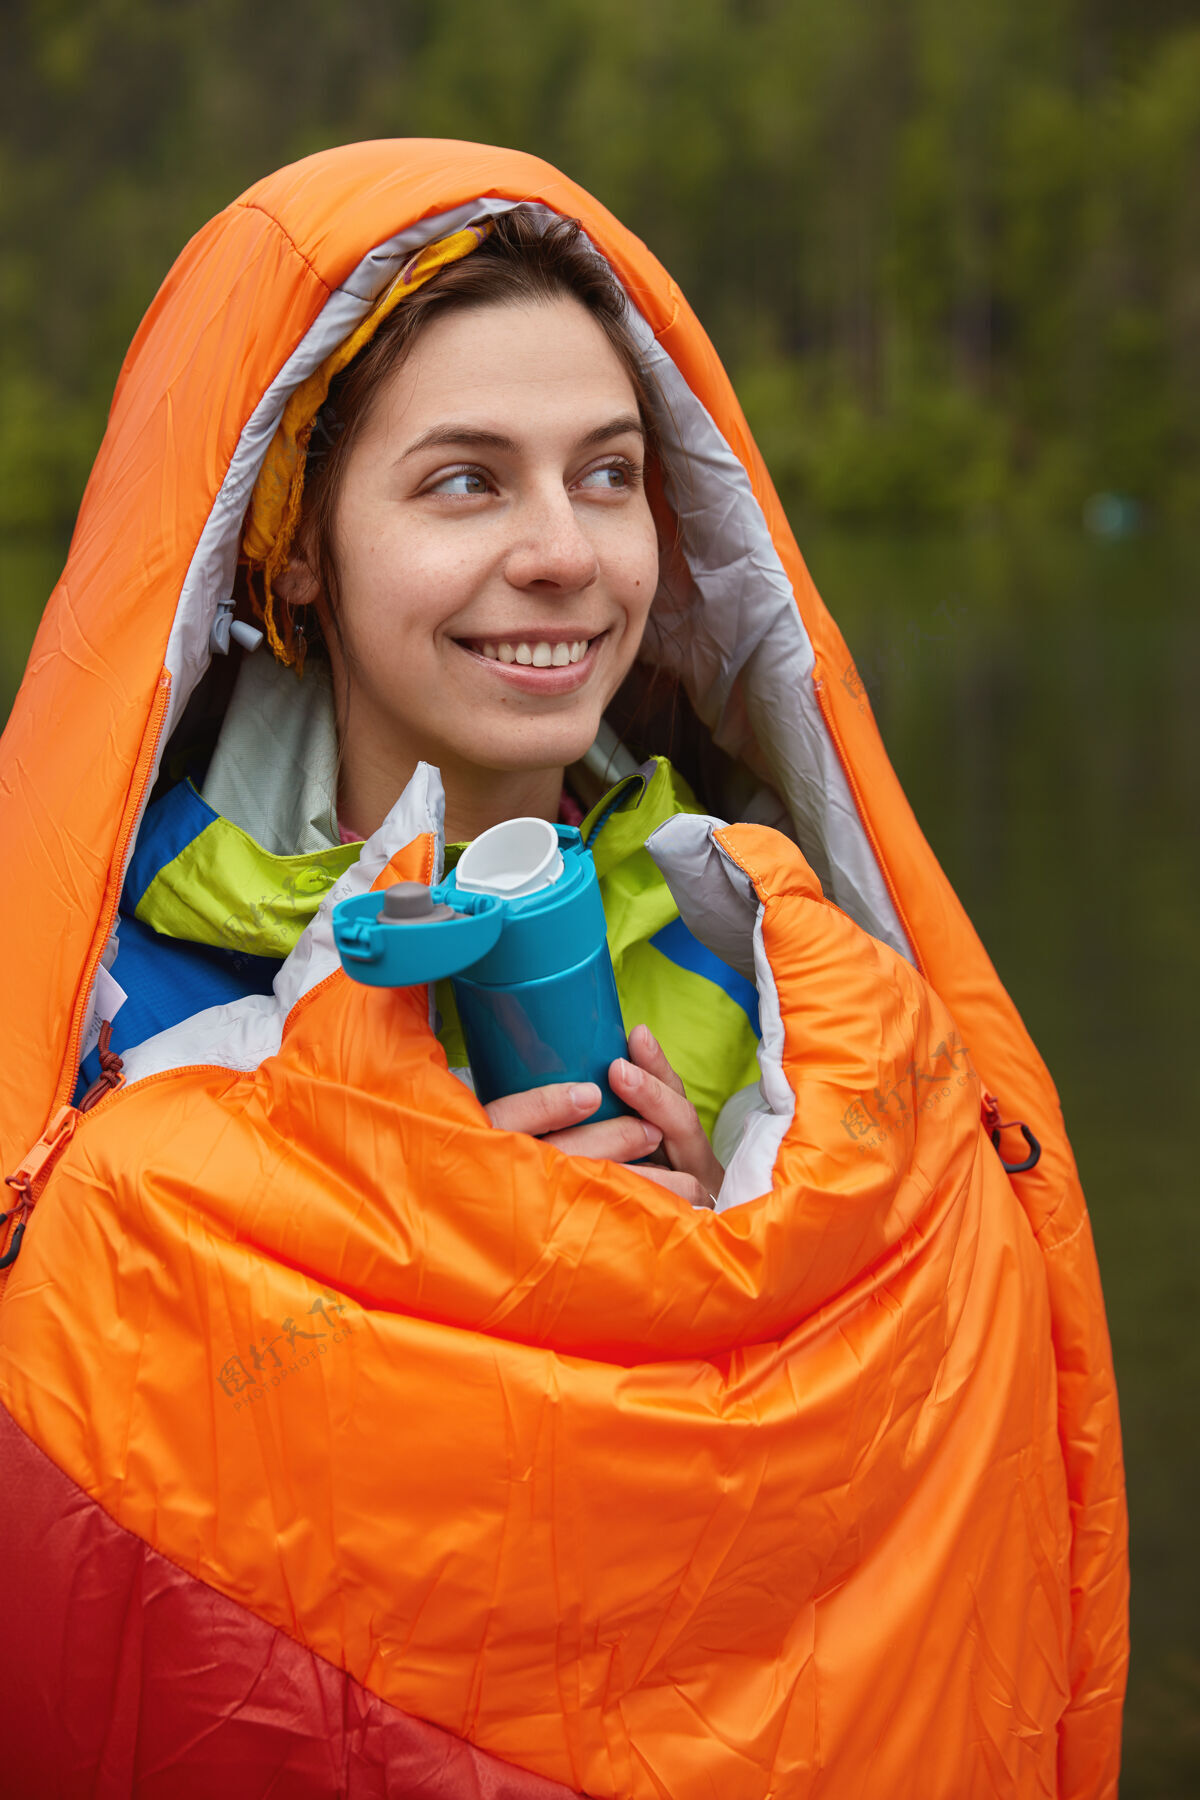 山地人们和露营的概念高兴可爱的女徒步旅行者包裹在橙色睡袋 温暖自己在寒冷的日子徒步旅行女性活动